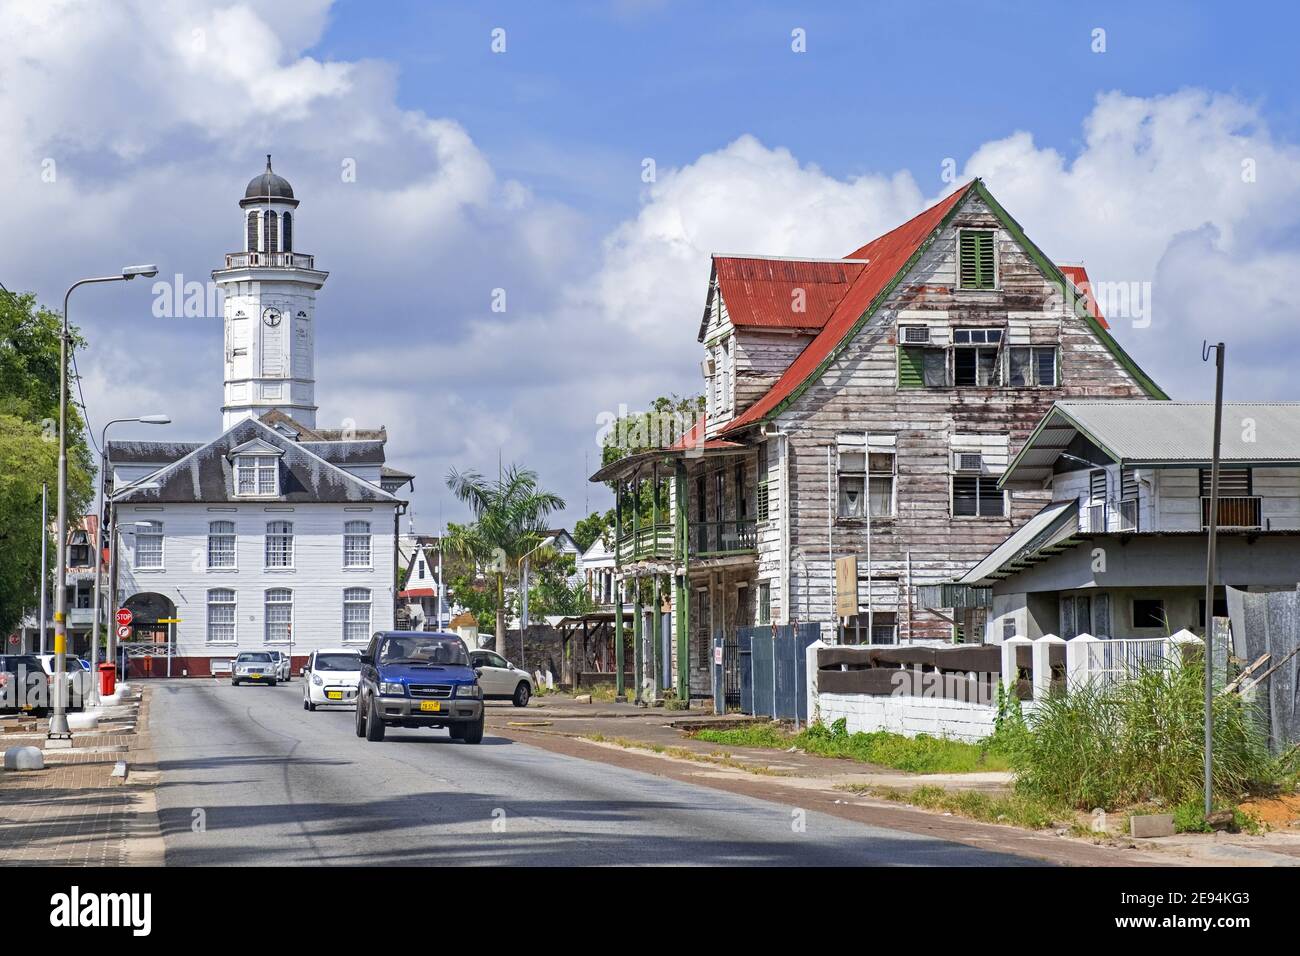 Weißer hölzerner Uhrenturm des Ministeriums für Finanzen Gebäude und Kolonialhäuser in der Innenstadt von Paramaribo, Suriname / Surinam Stockfoto